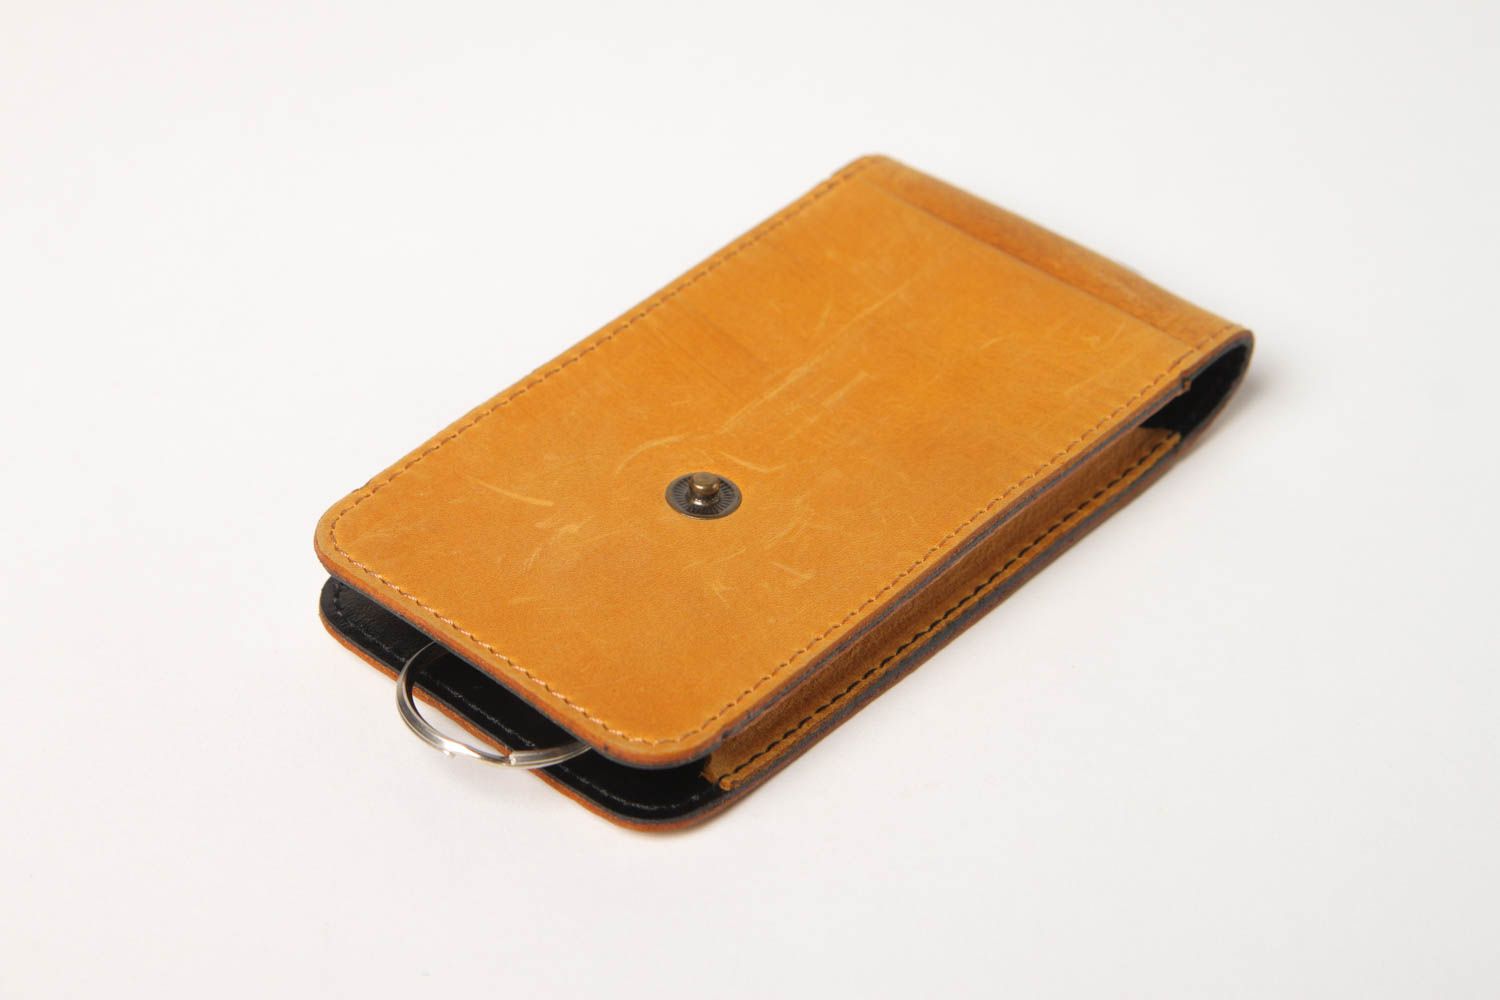 Unusual handmade leather key purse stylish key holder leather goods gift ideas photo 4